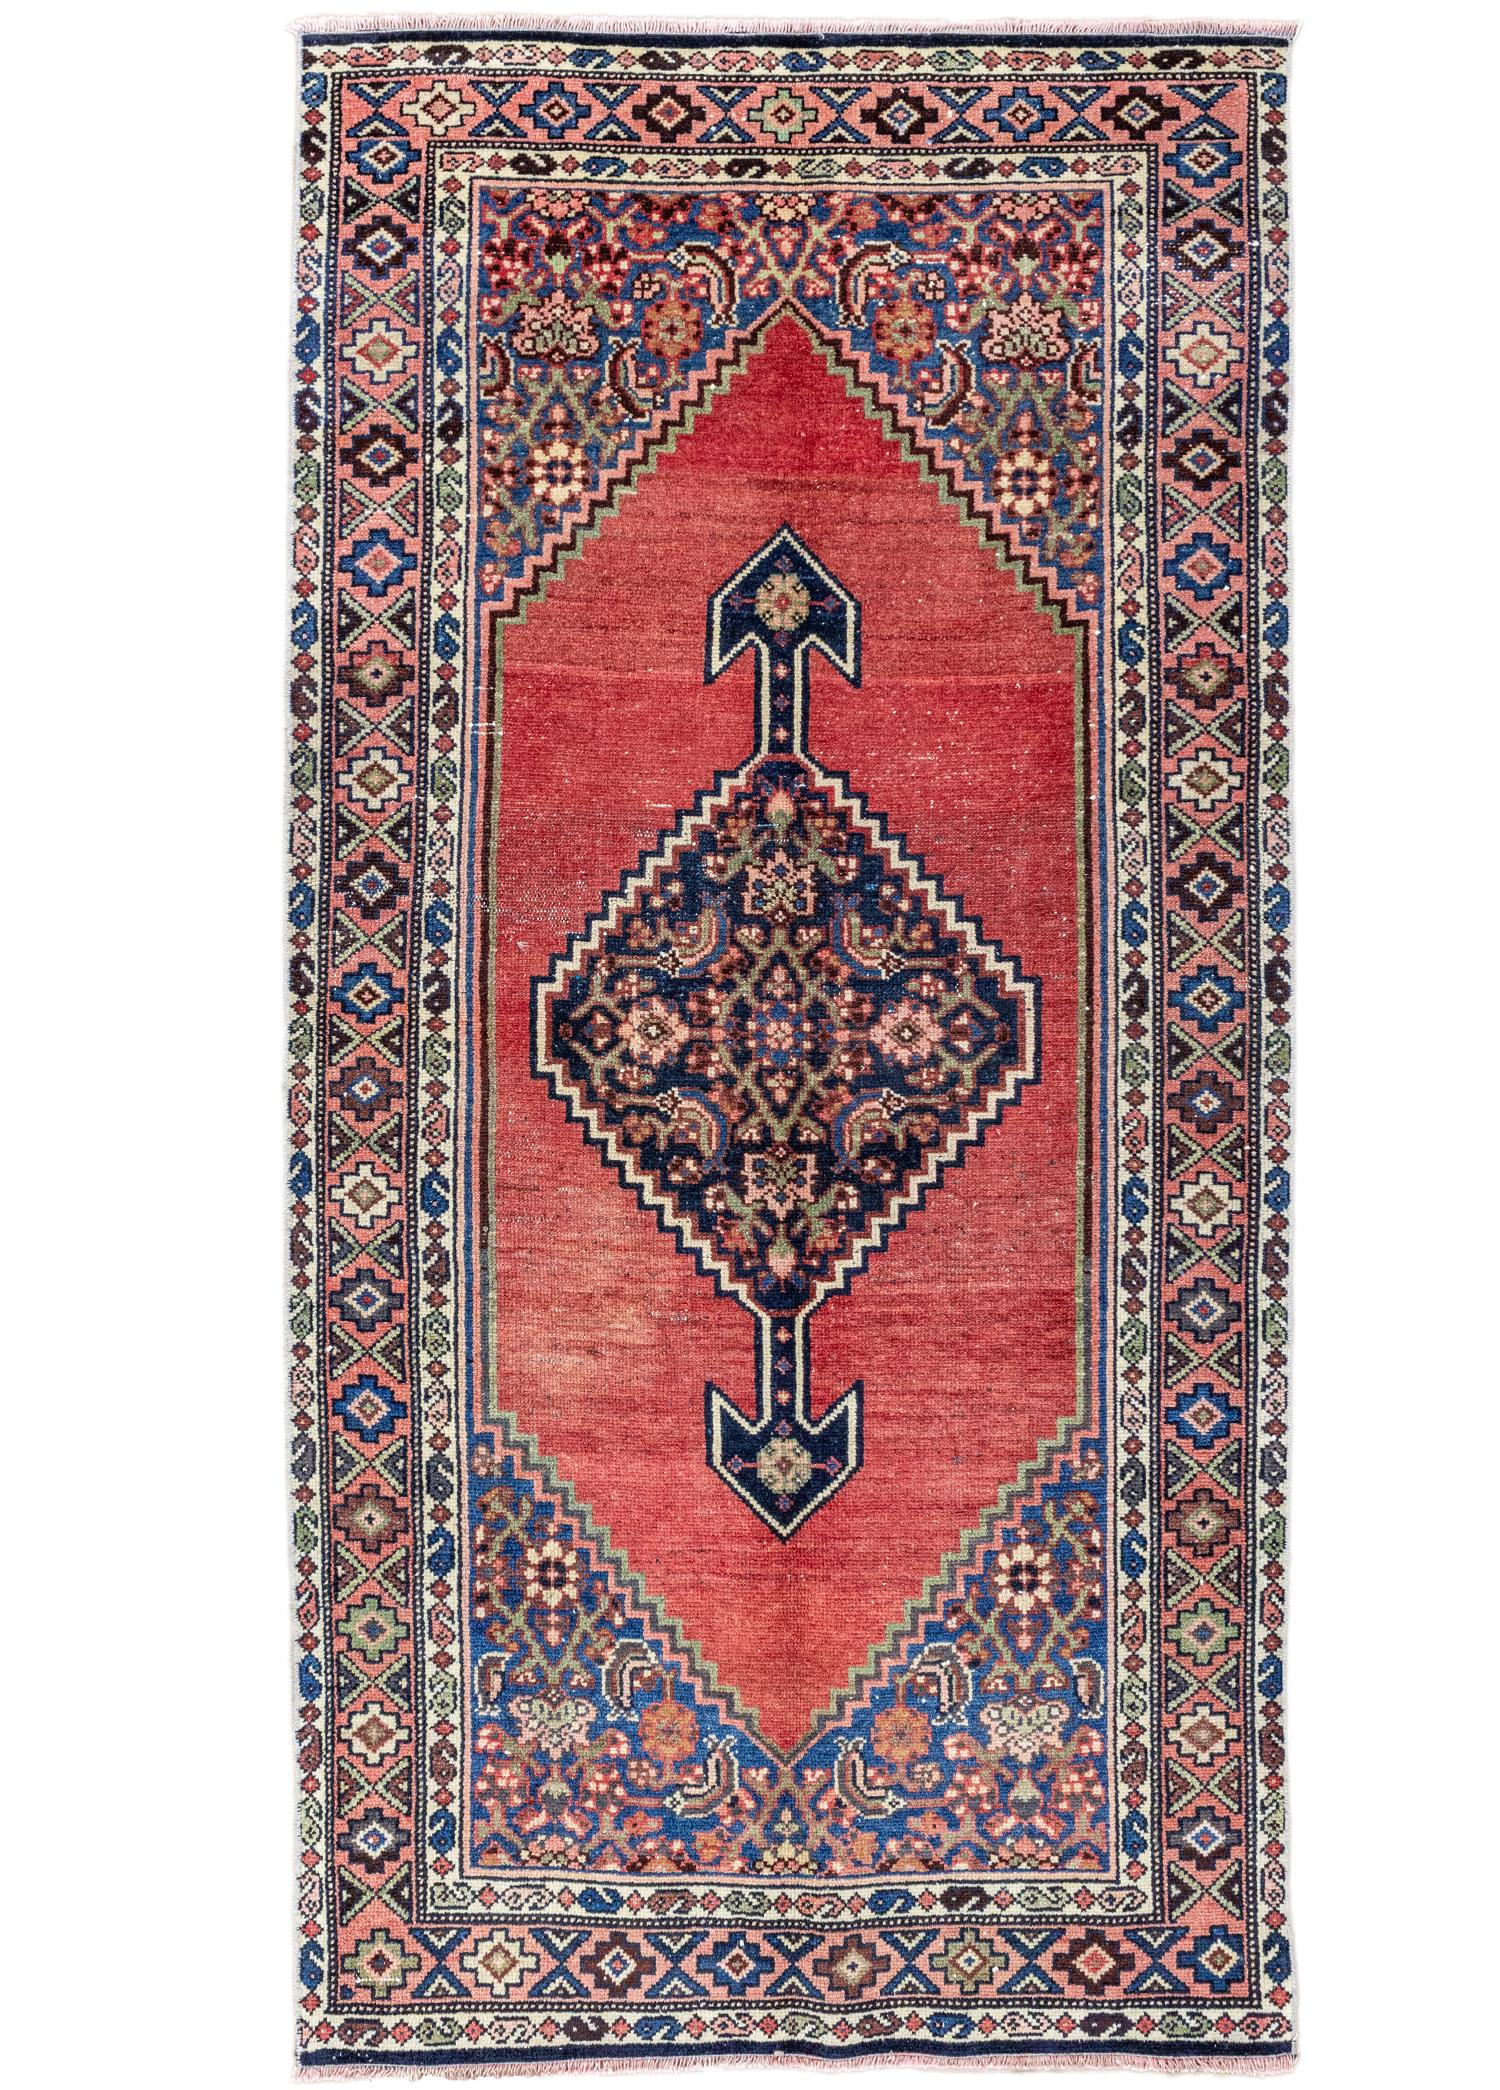 Sariya Traditional Hand-Woven Persian Rug 92x180 cm